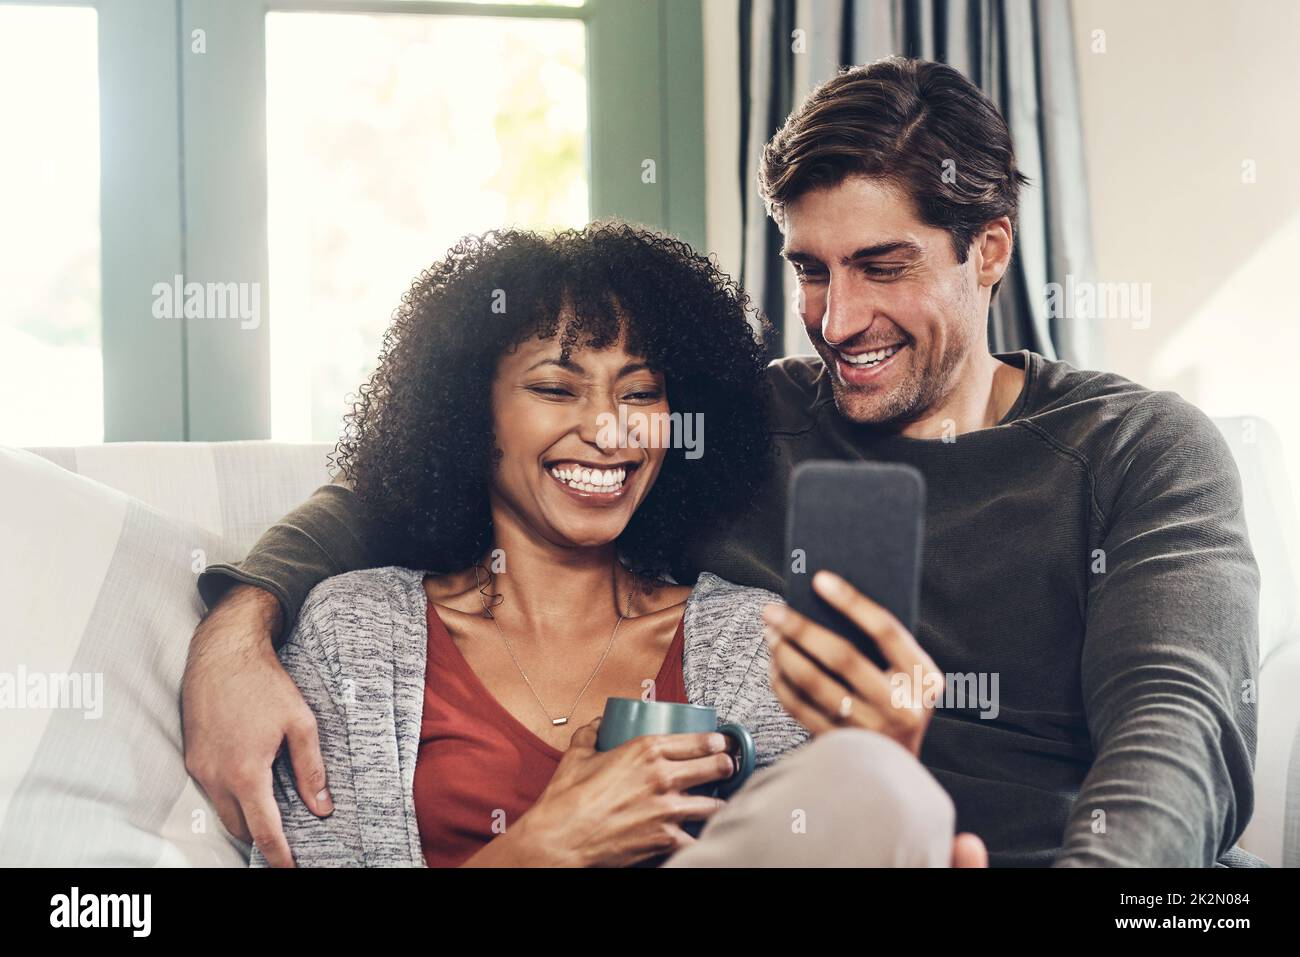 Sehen Sie sich an, was heute online an Trends liegt. Aufnahme eines liebevollen jungen Paares, das auf einer Couch sitzt und zu Hause eine gute Zeit miteinander verbringt. Stockfoto